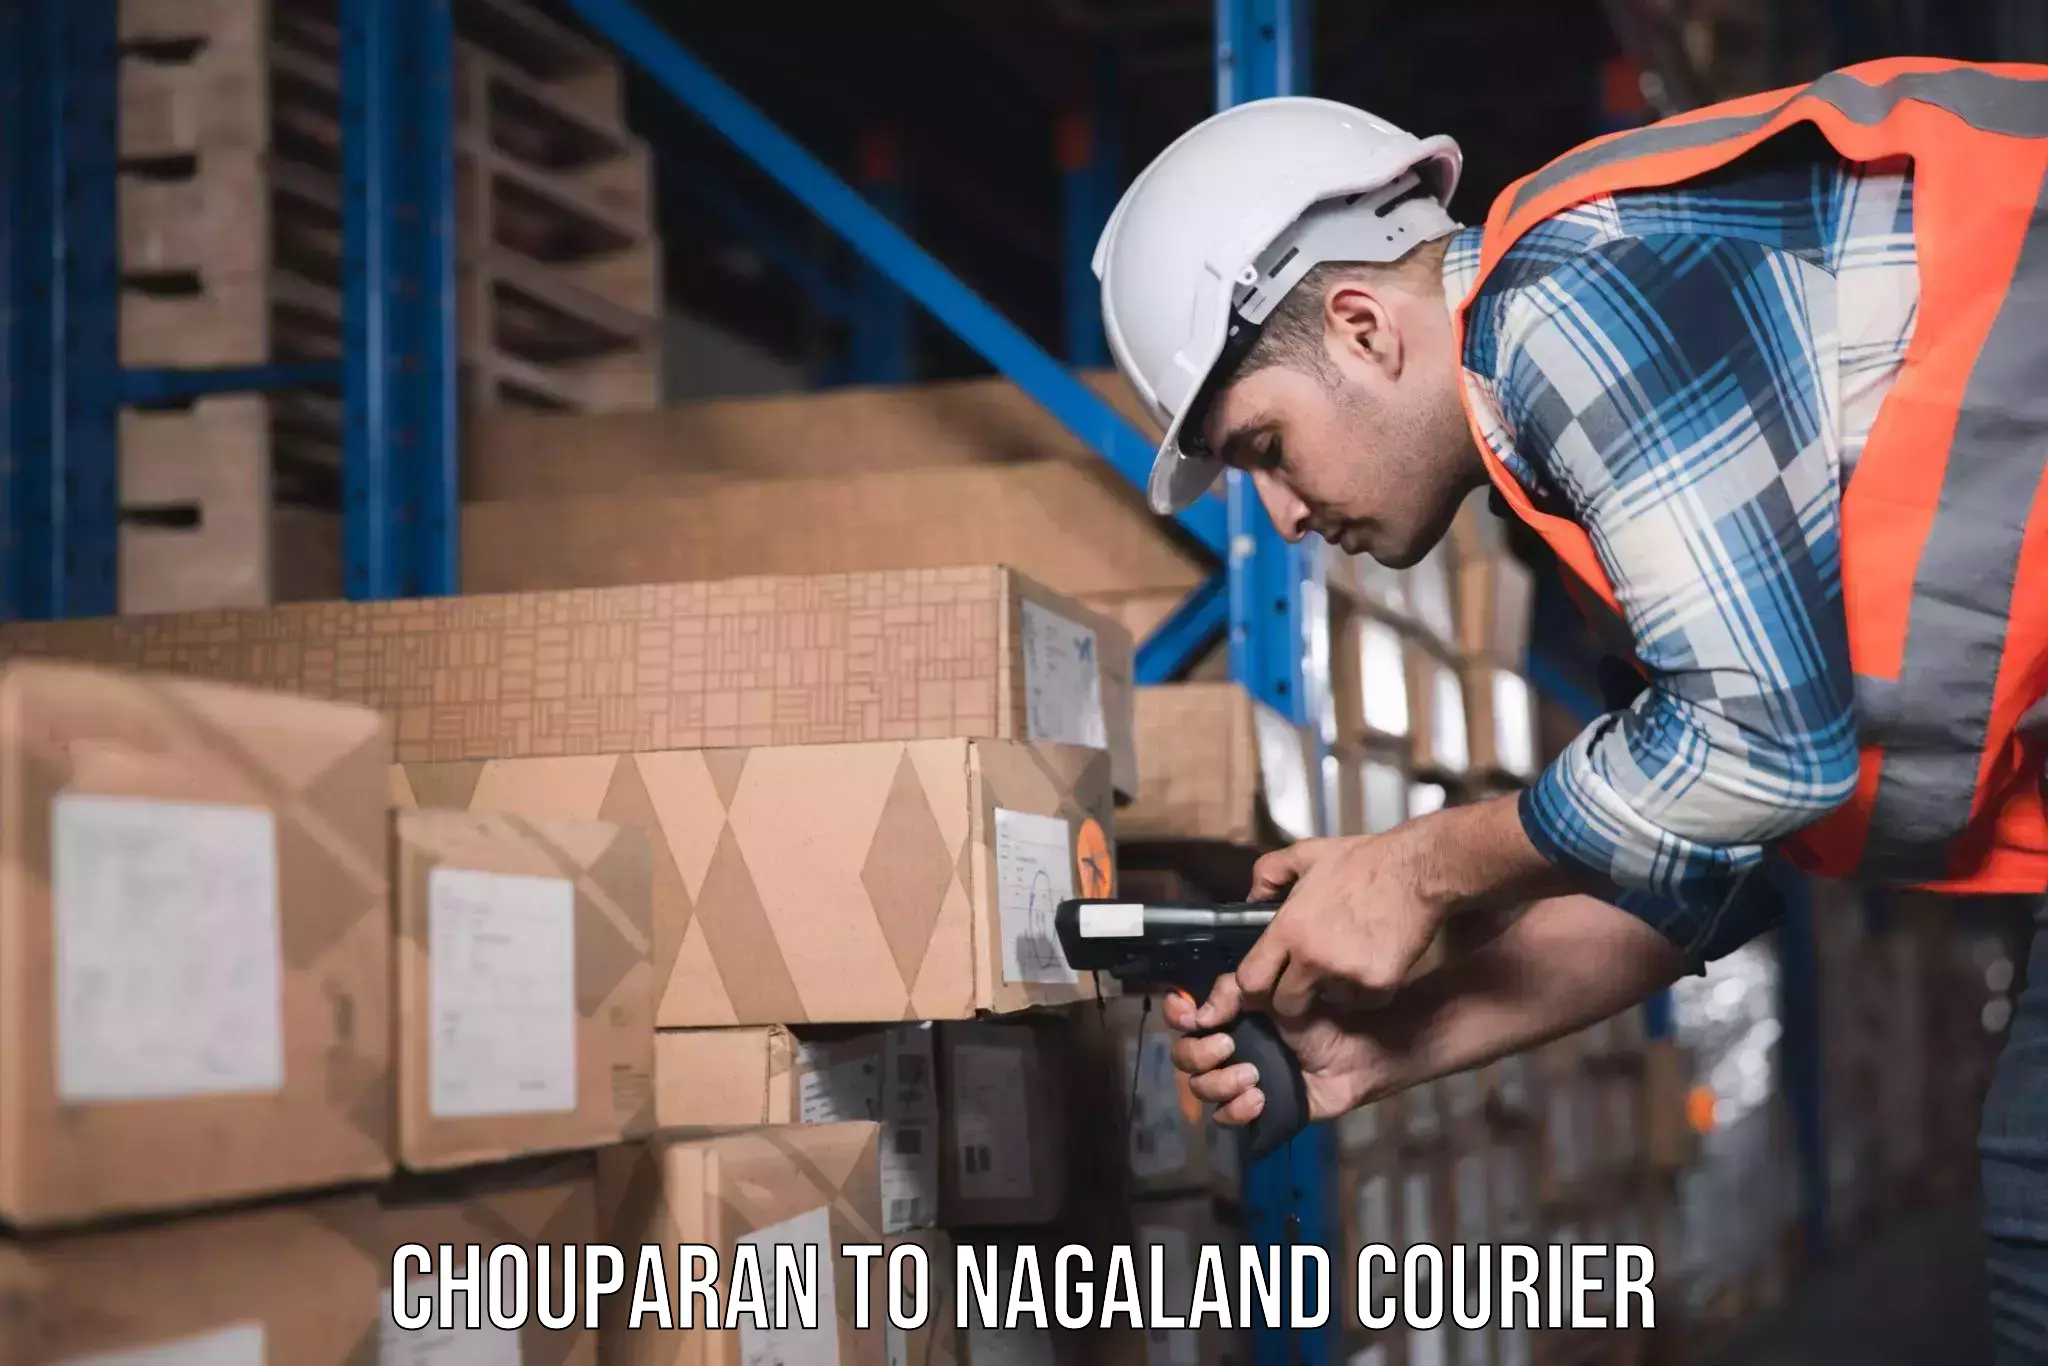 Furniture transport experts Chouparan to Nagaland